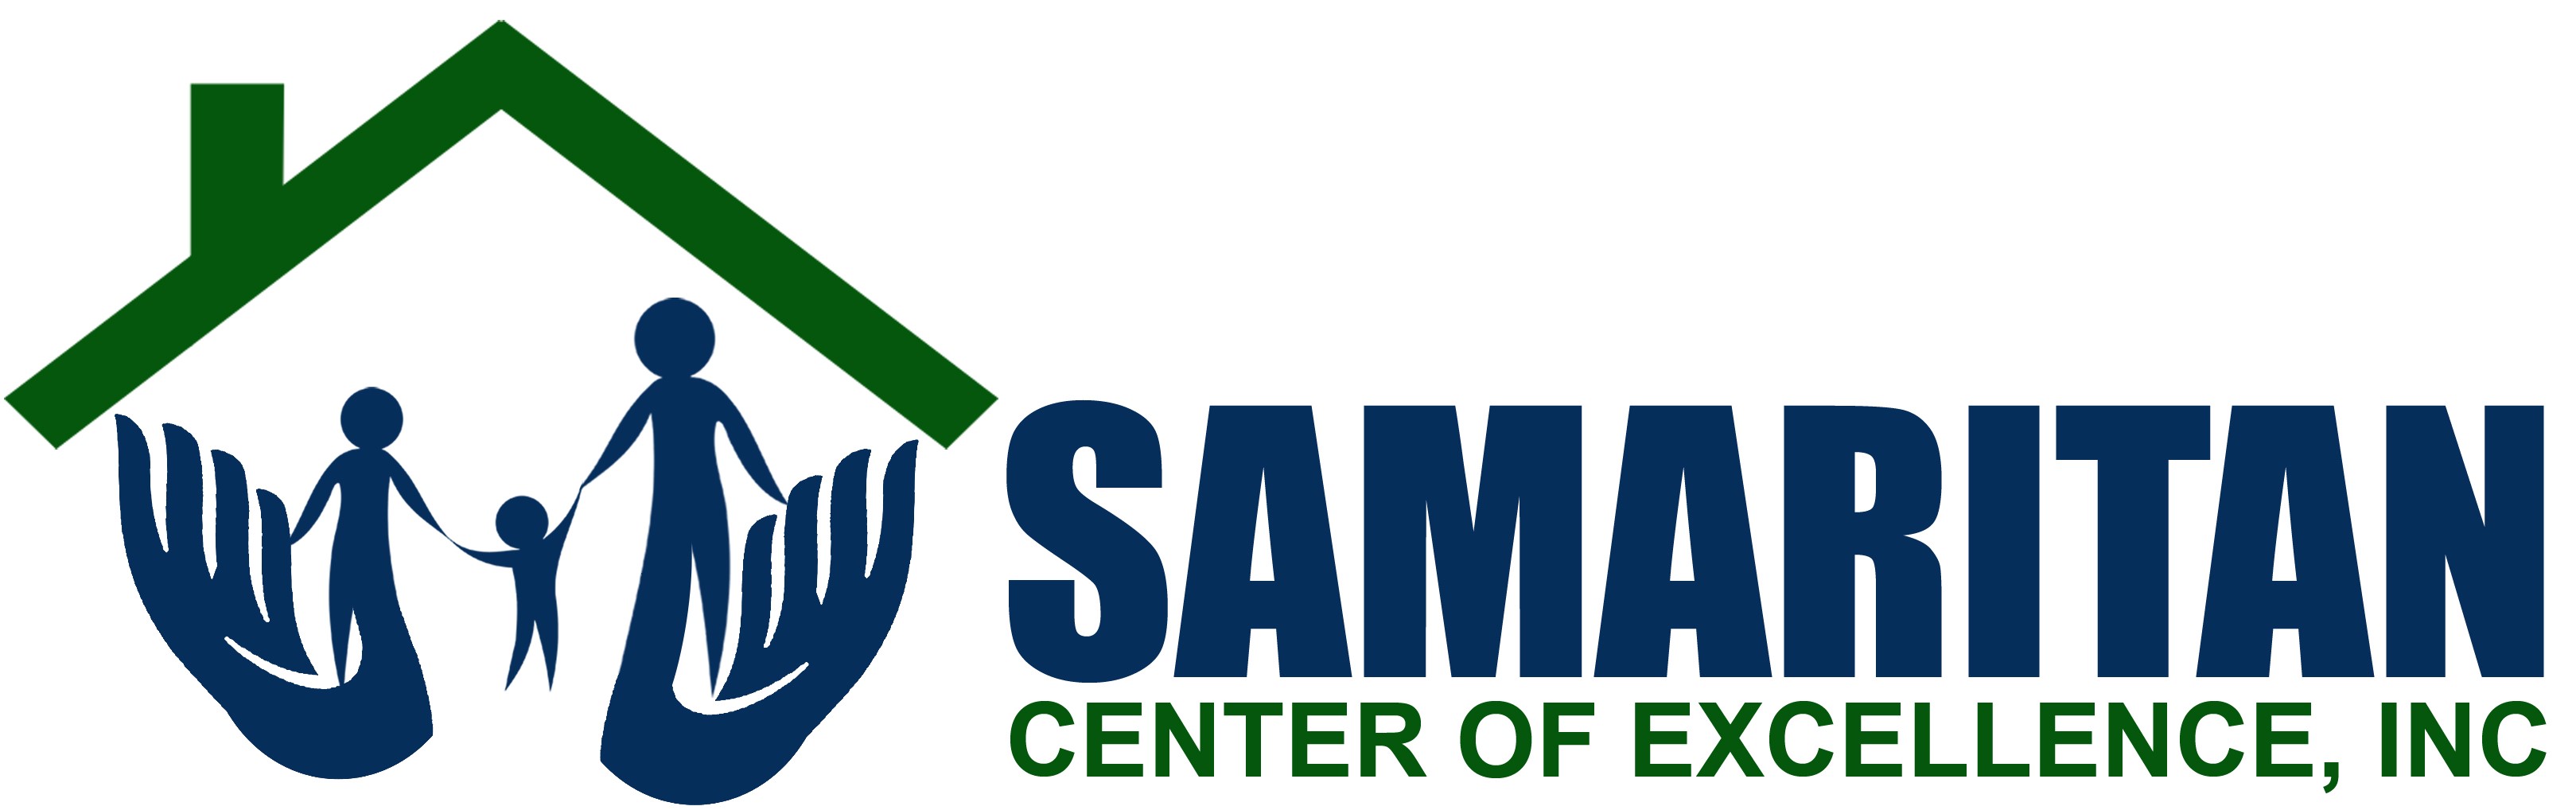 Samaritan Center of Excellence logo